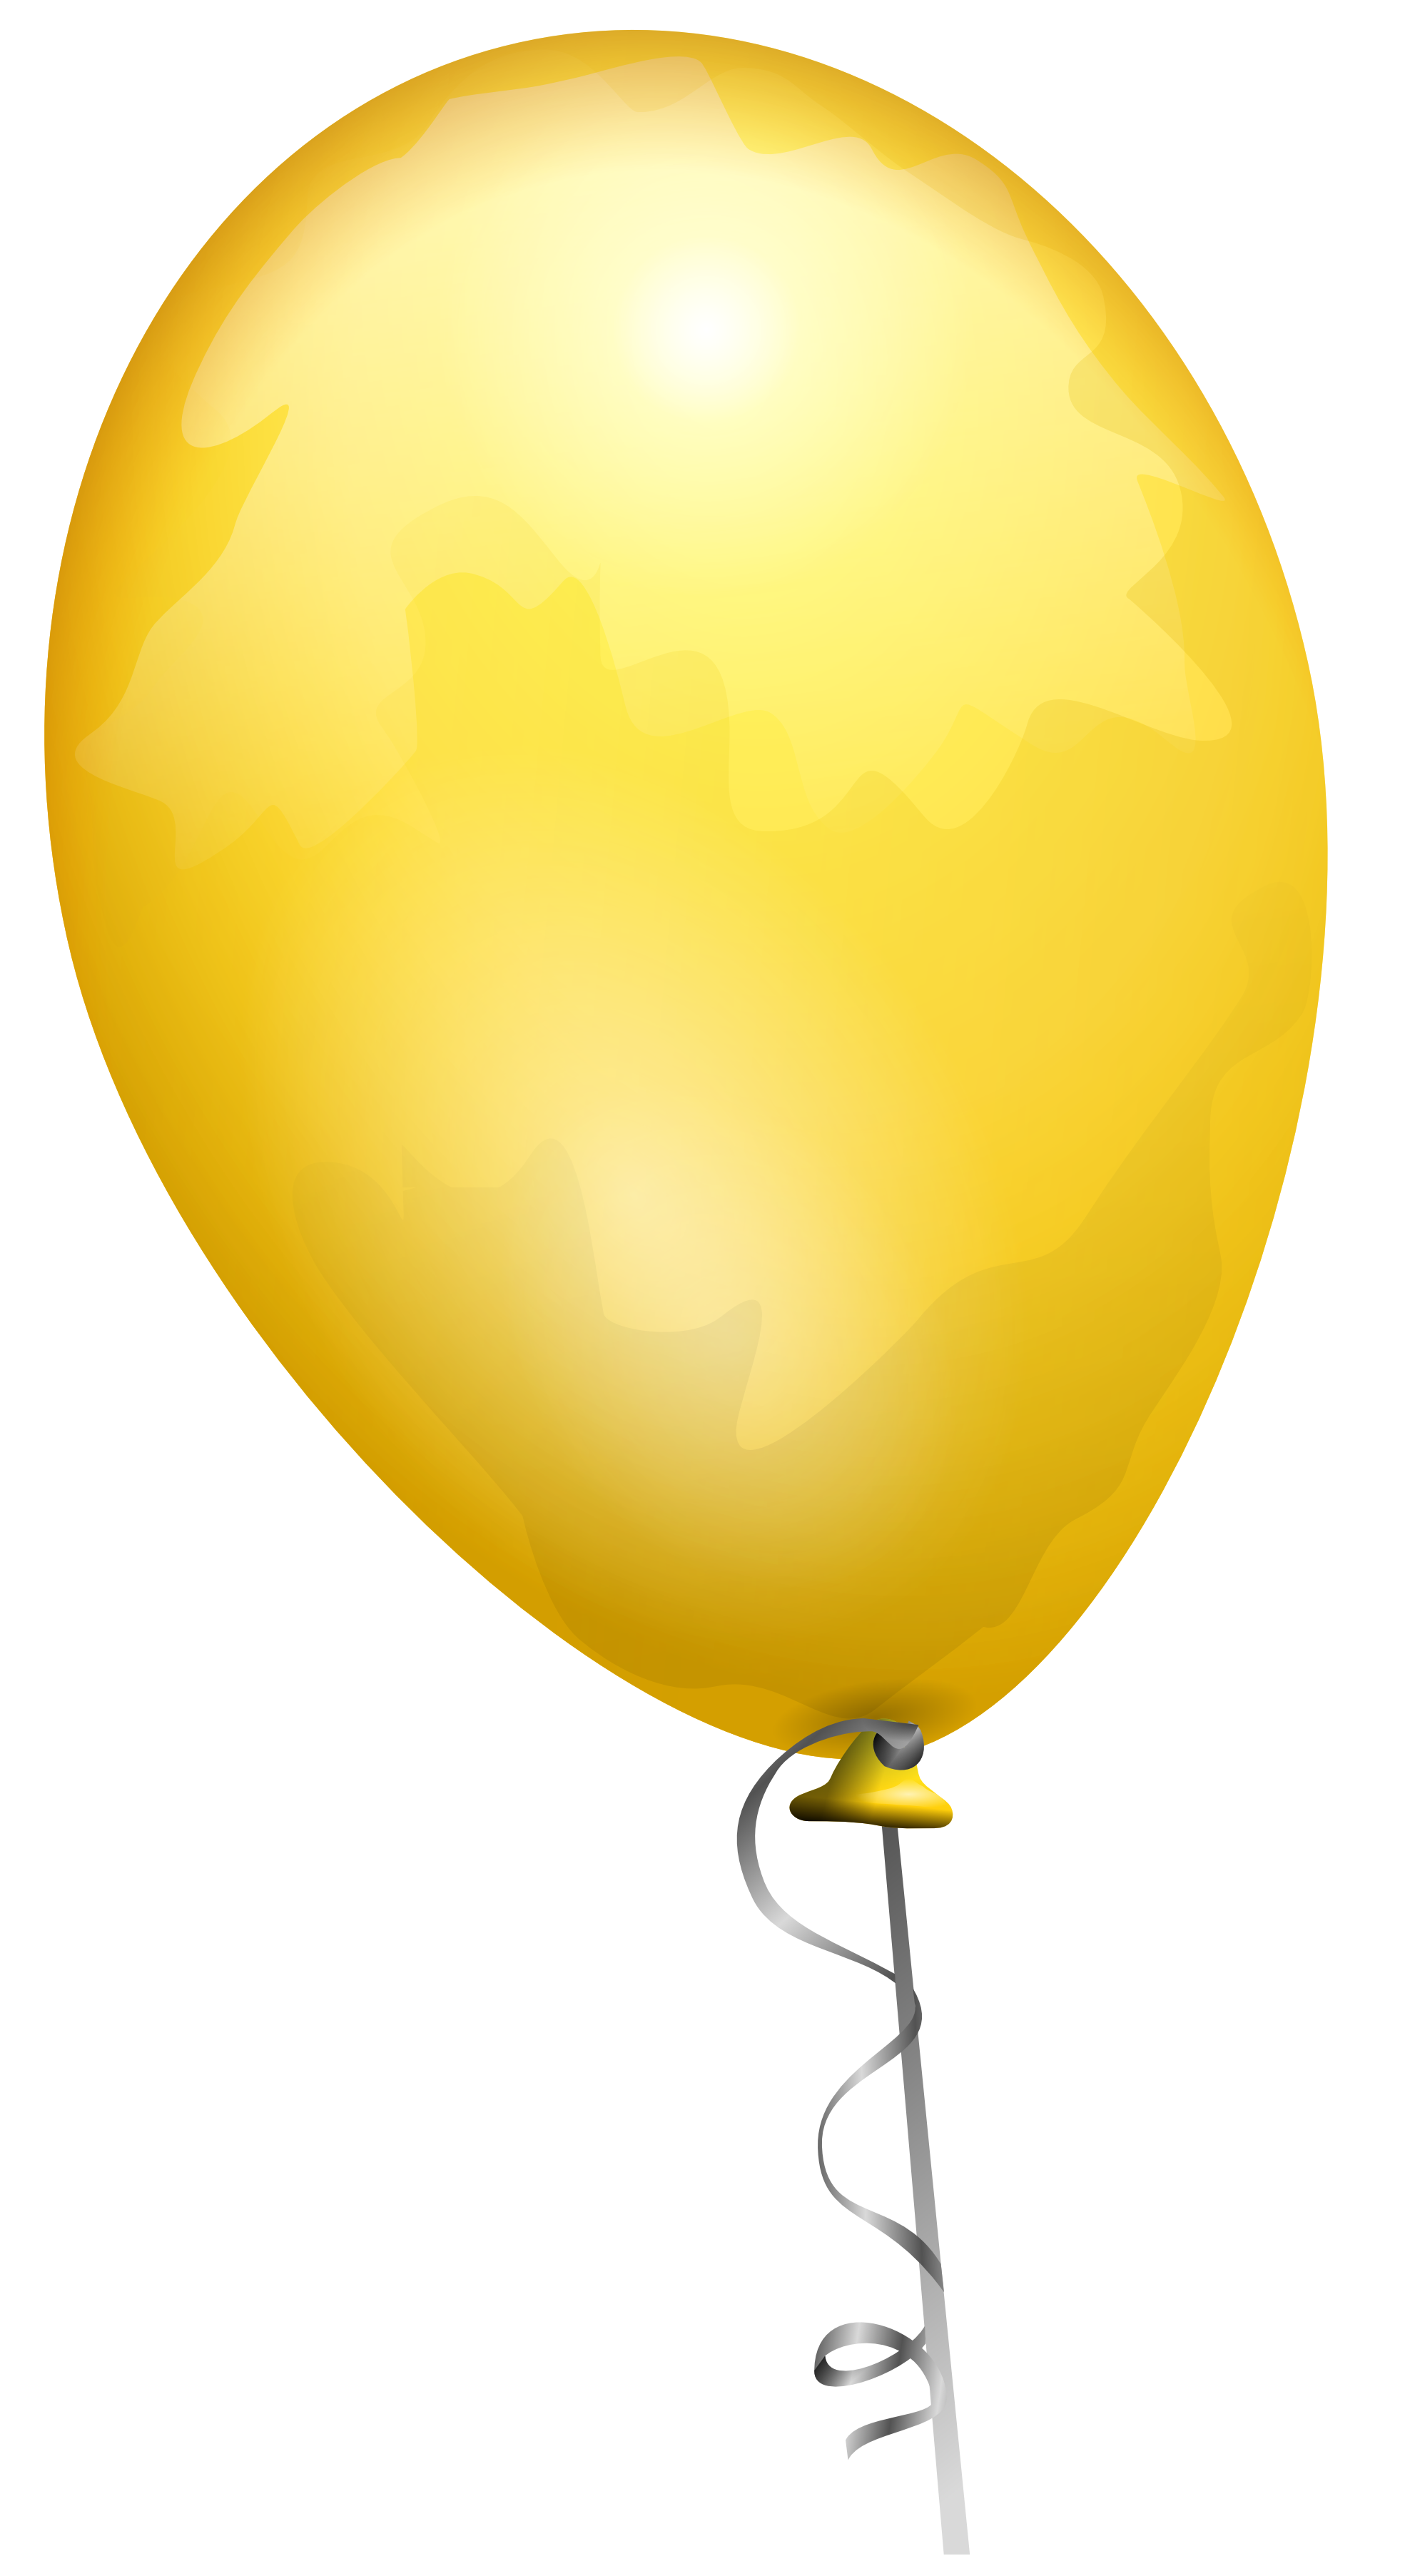 गुब्बारा